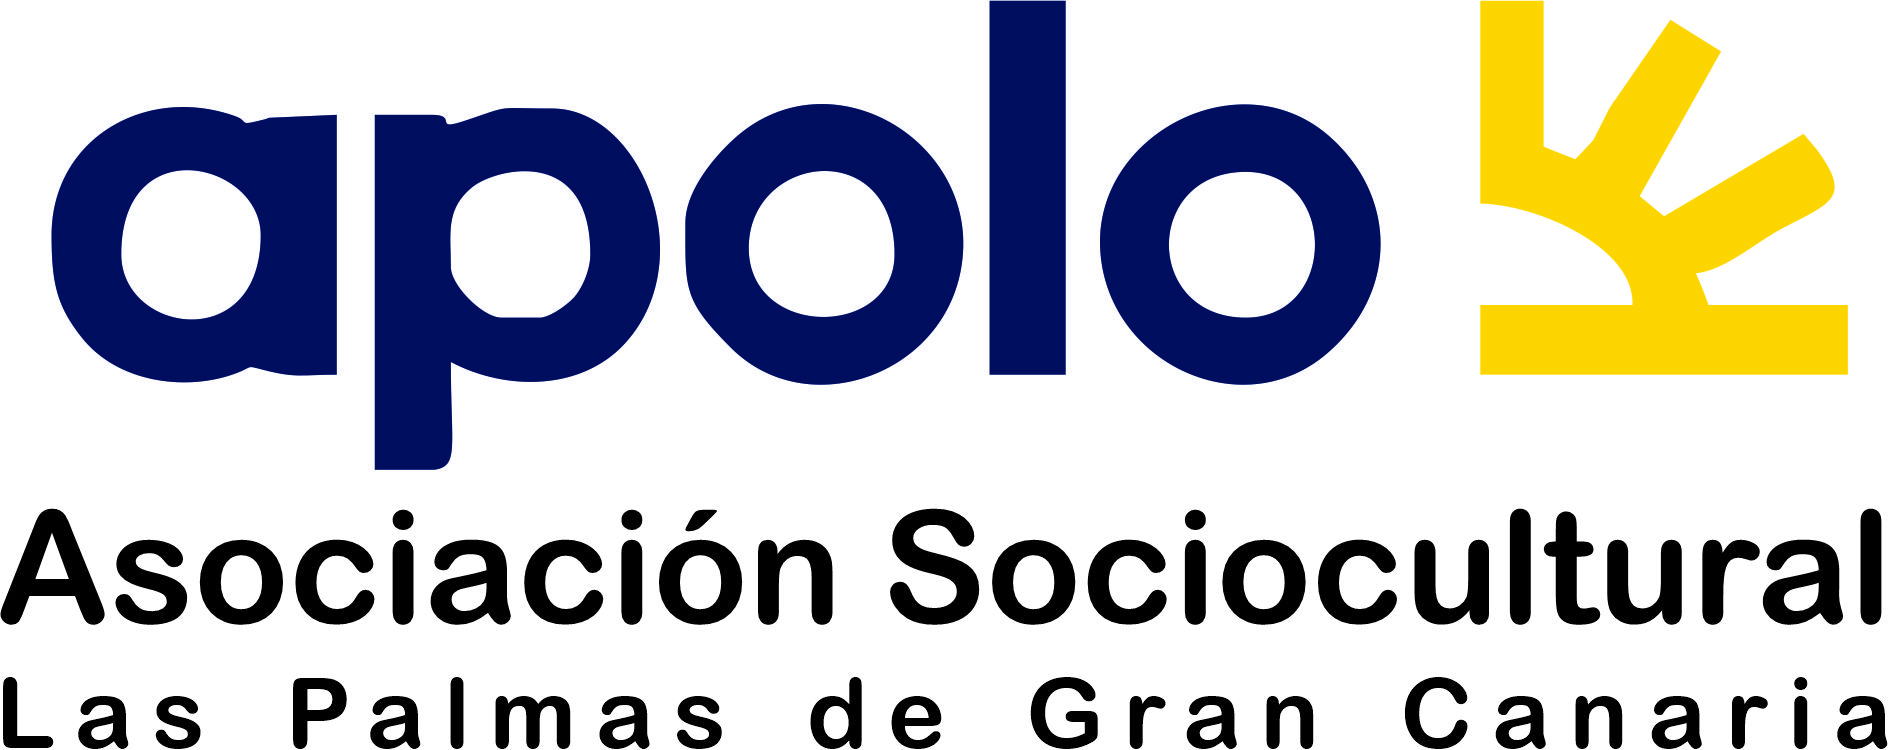 Asociación Sociocultural Apolo . Mariano Segalla